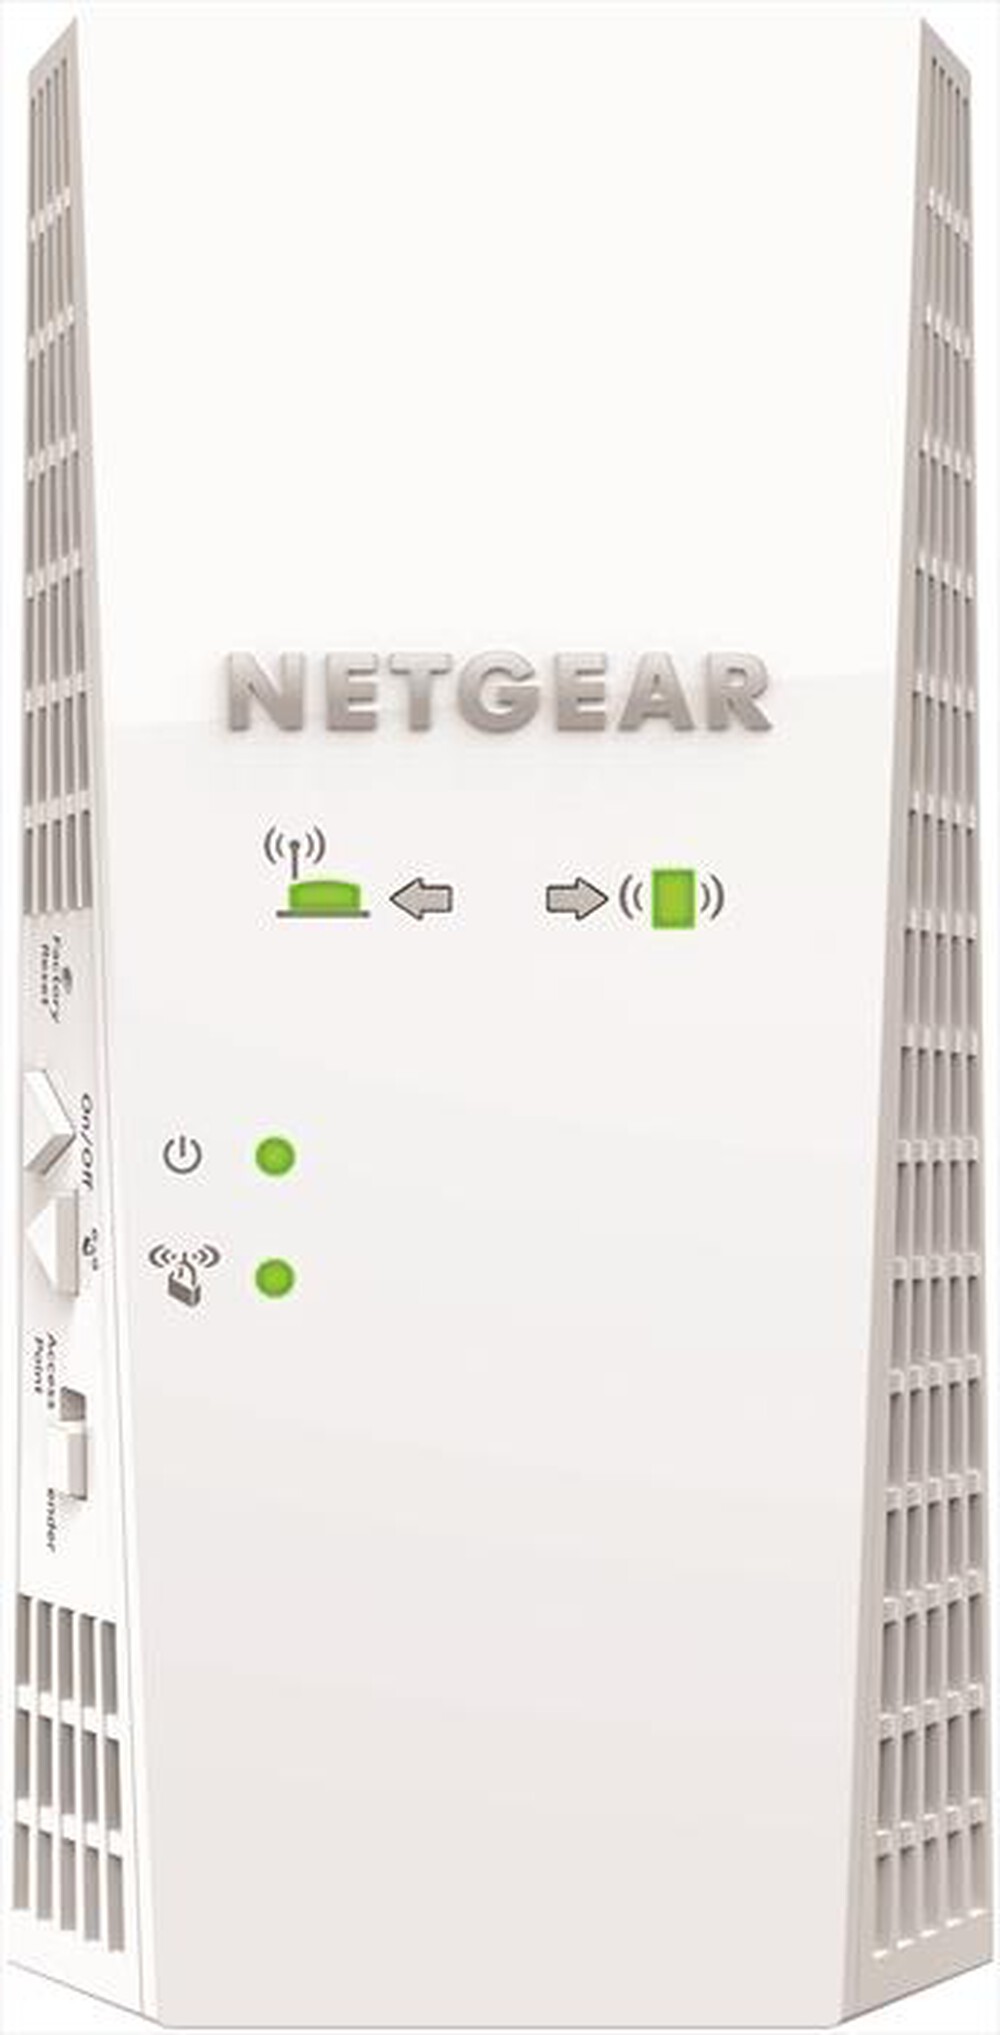 "NETGEAR - EX6250"